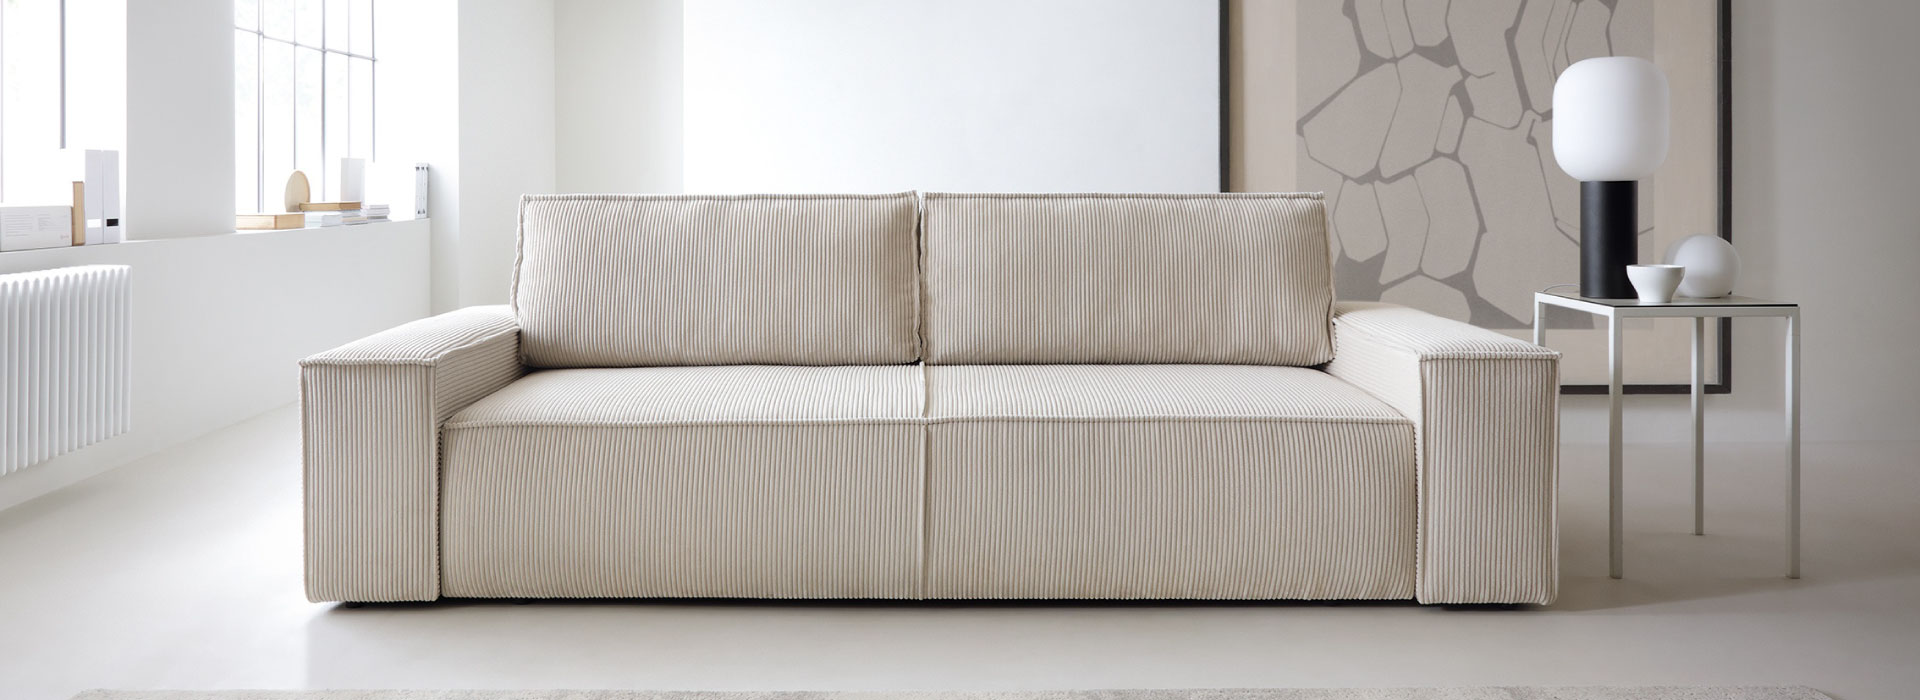 Jasnobeżowa sofa rozkładana o prostej i minimalistycznej formie w całości wykonana z tkaniny sztruksowej. Po prawej stronie stolik pomocniczy, na którym stoją dekoracje i lampa na czarnej nodze.